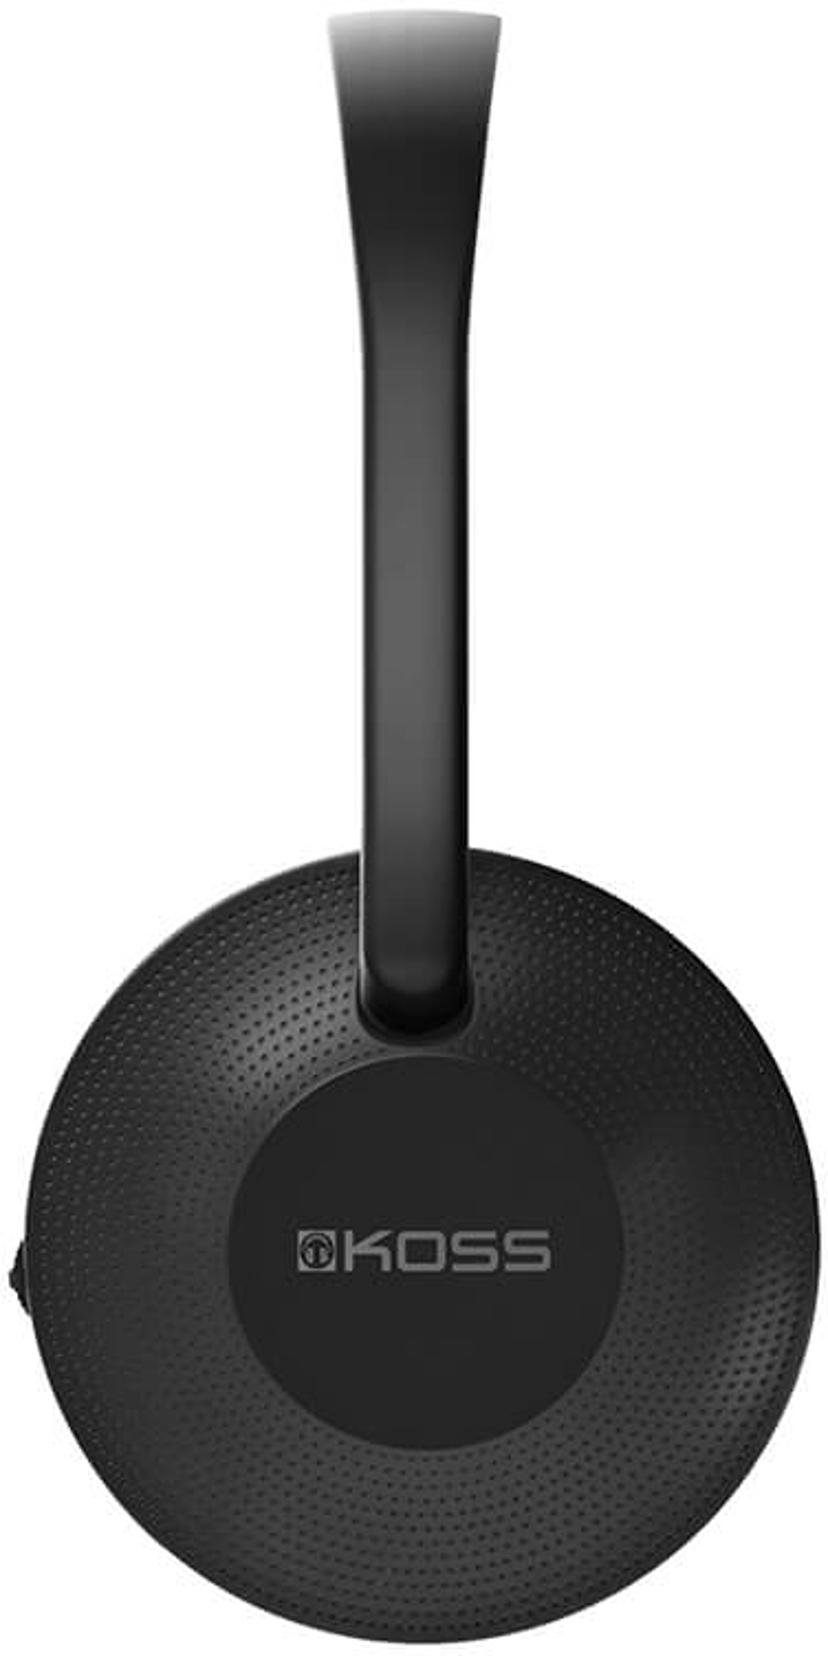 Koss KPH7 Wireless On-Ear